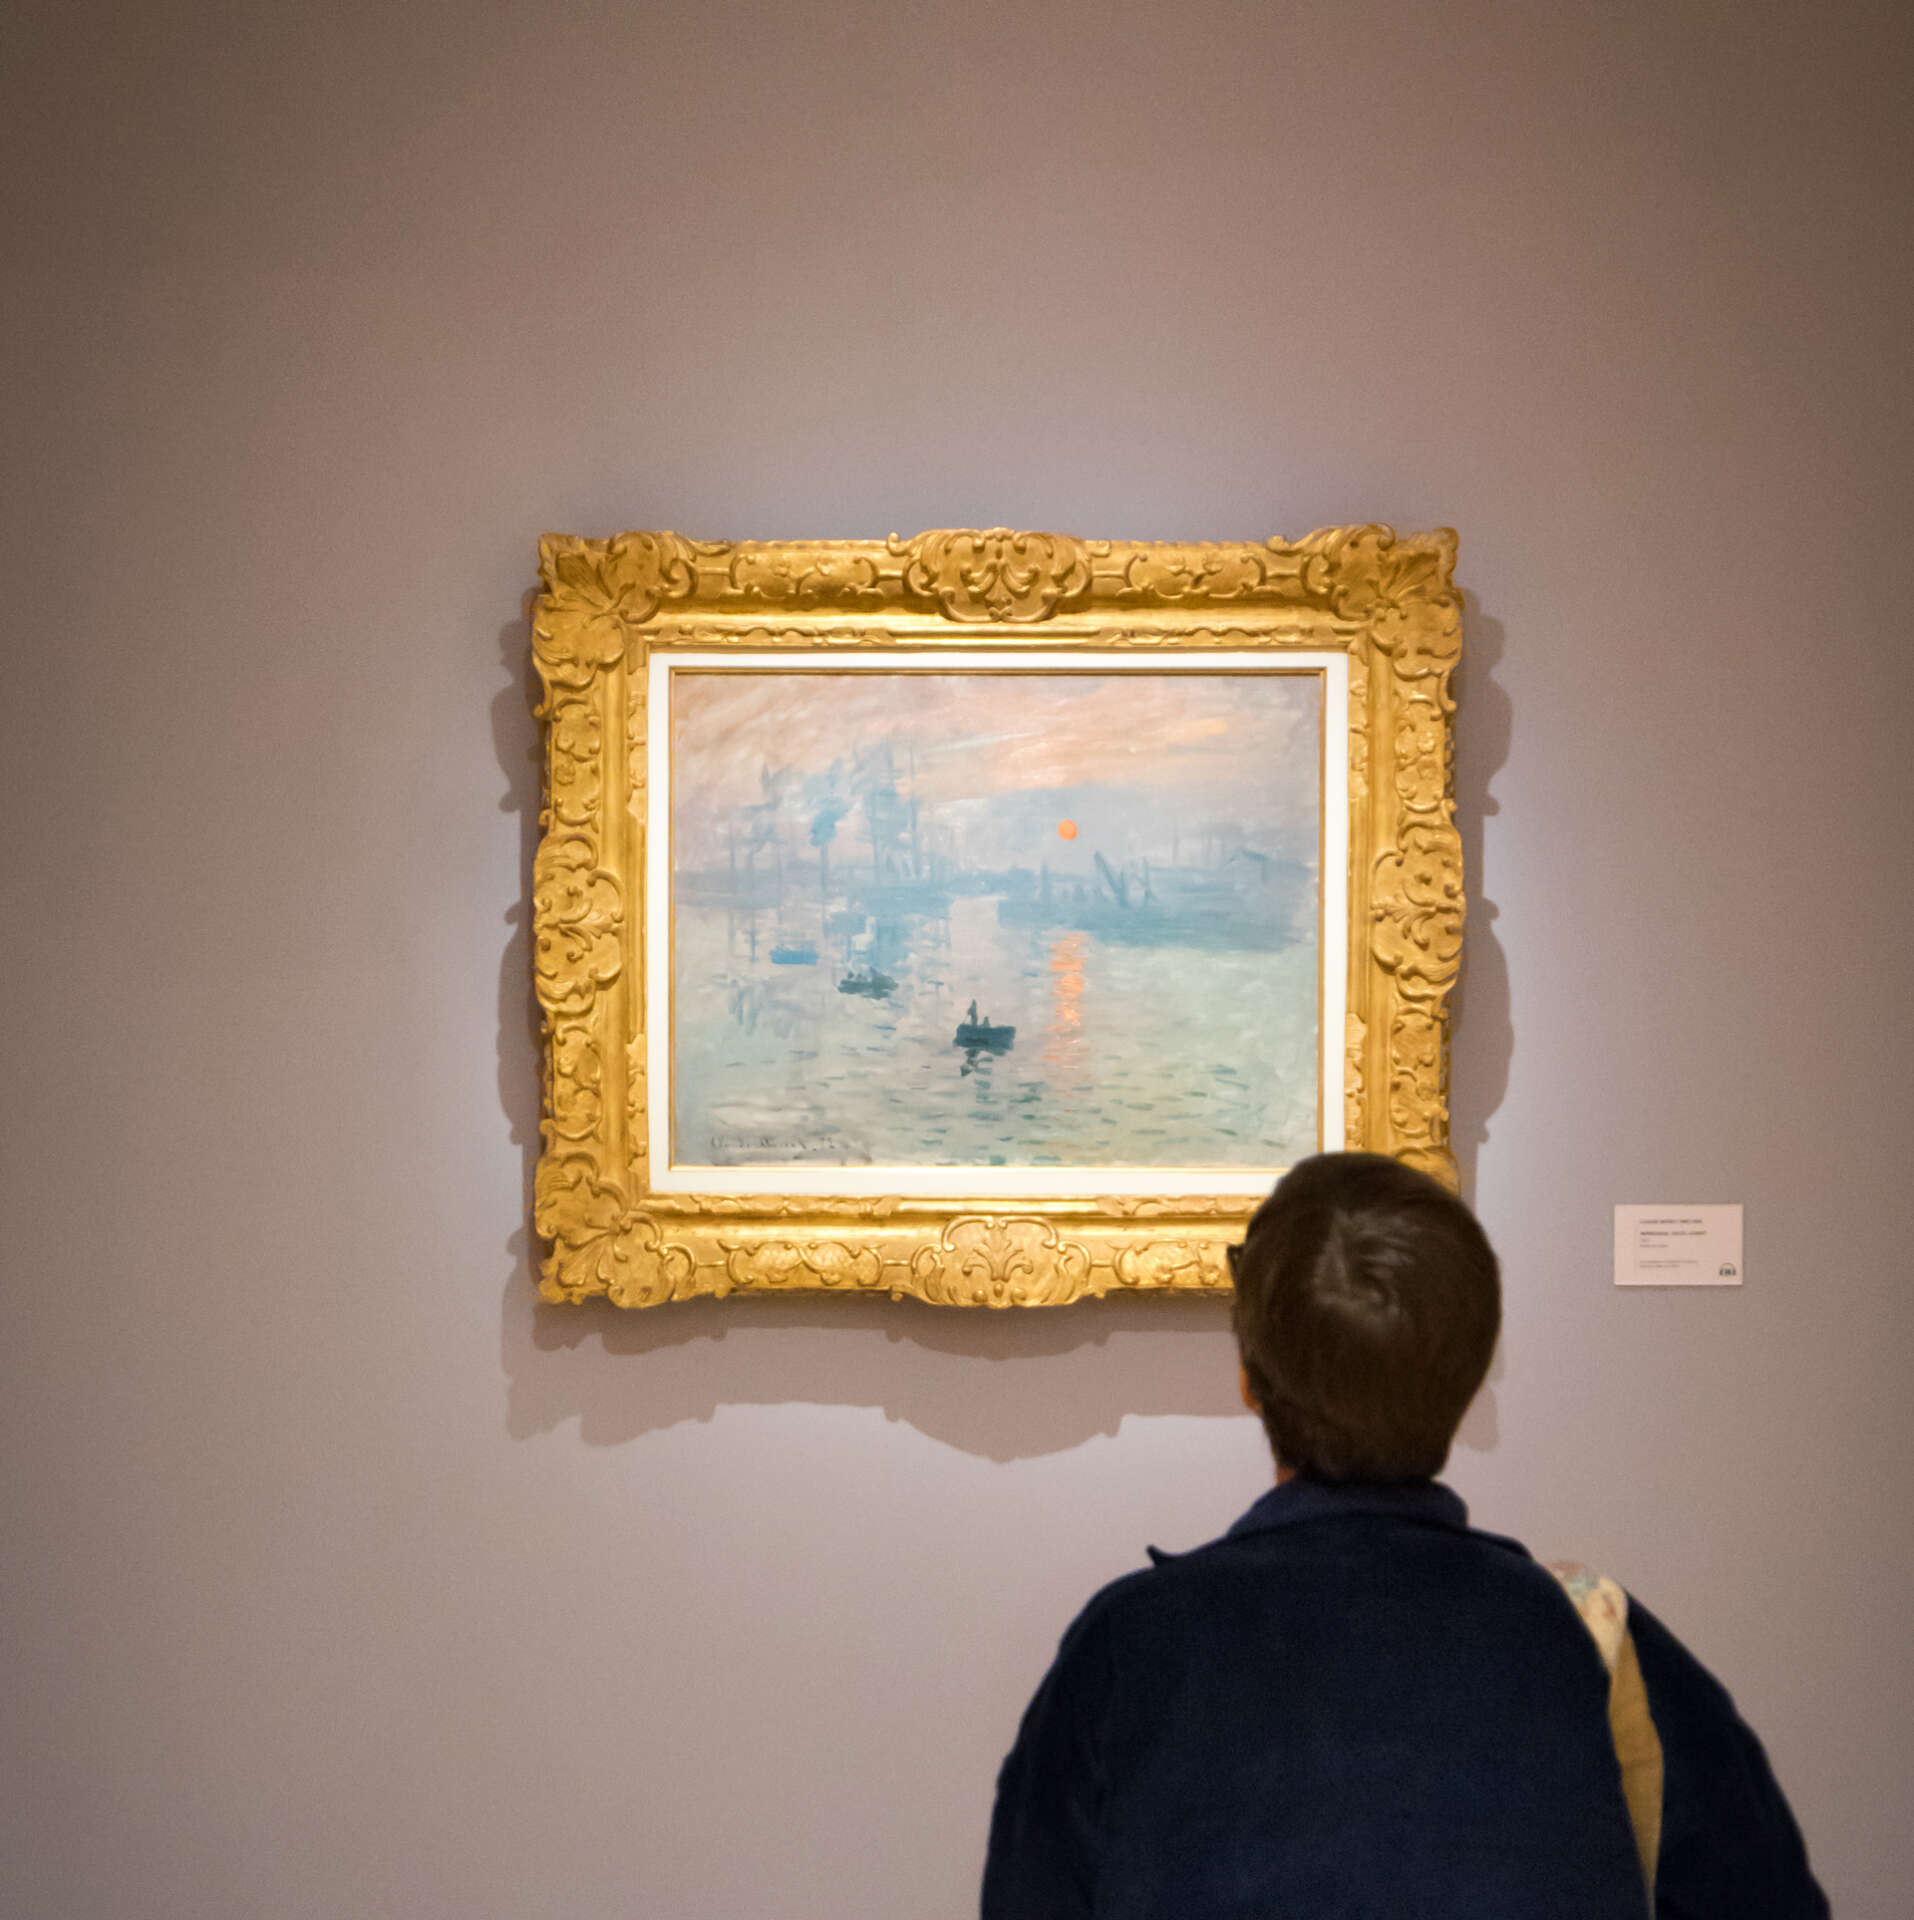 Musée Marmottan Monet : devant "Impression, soleil levant" de Claude Monet © Juliette JNSPC